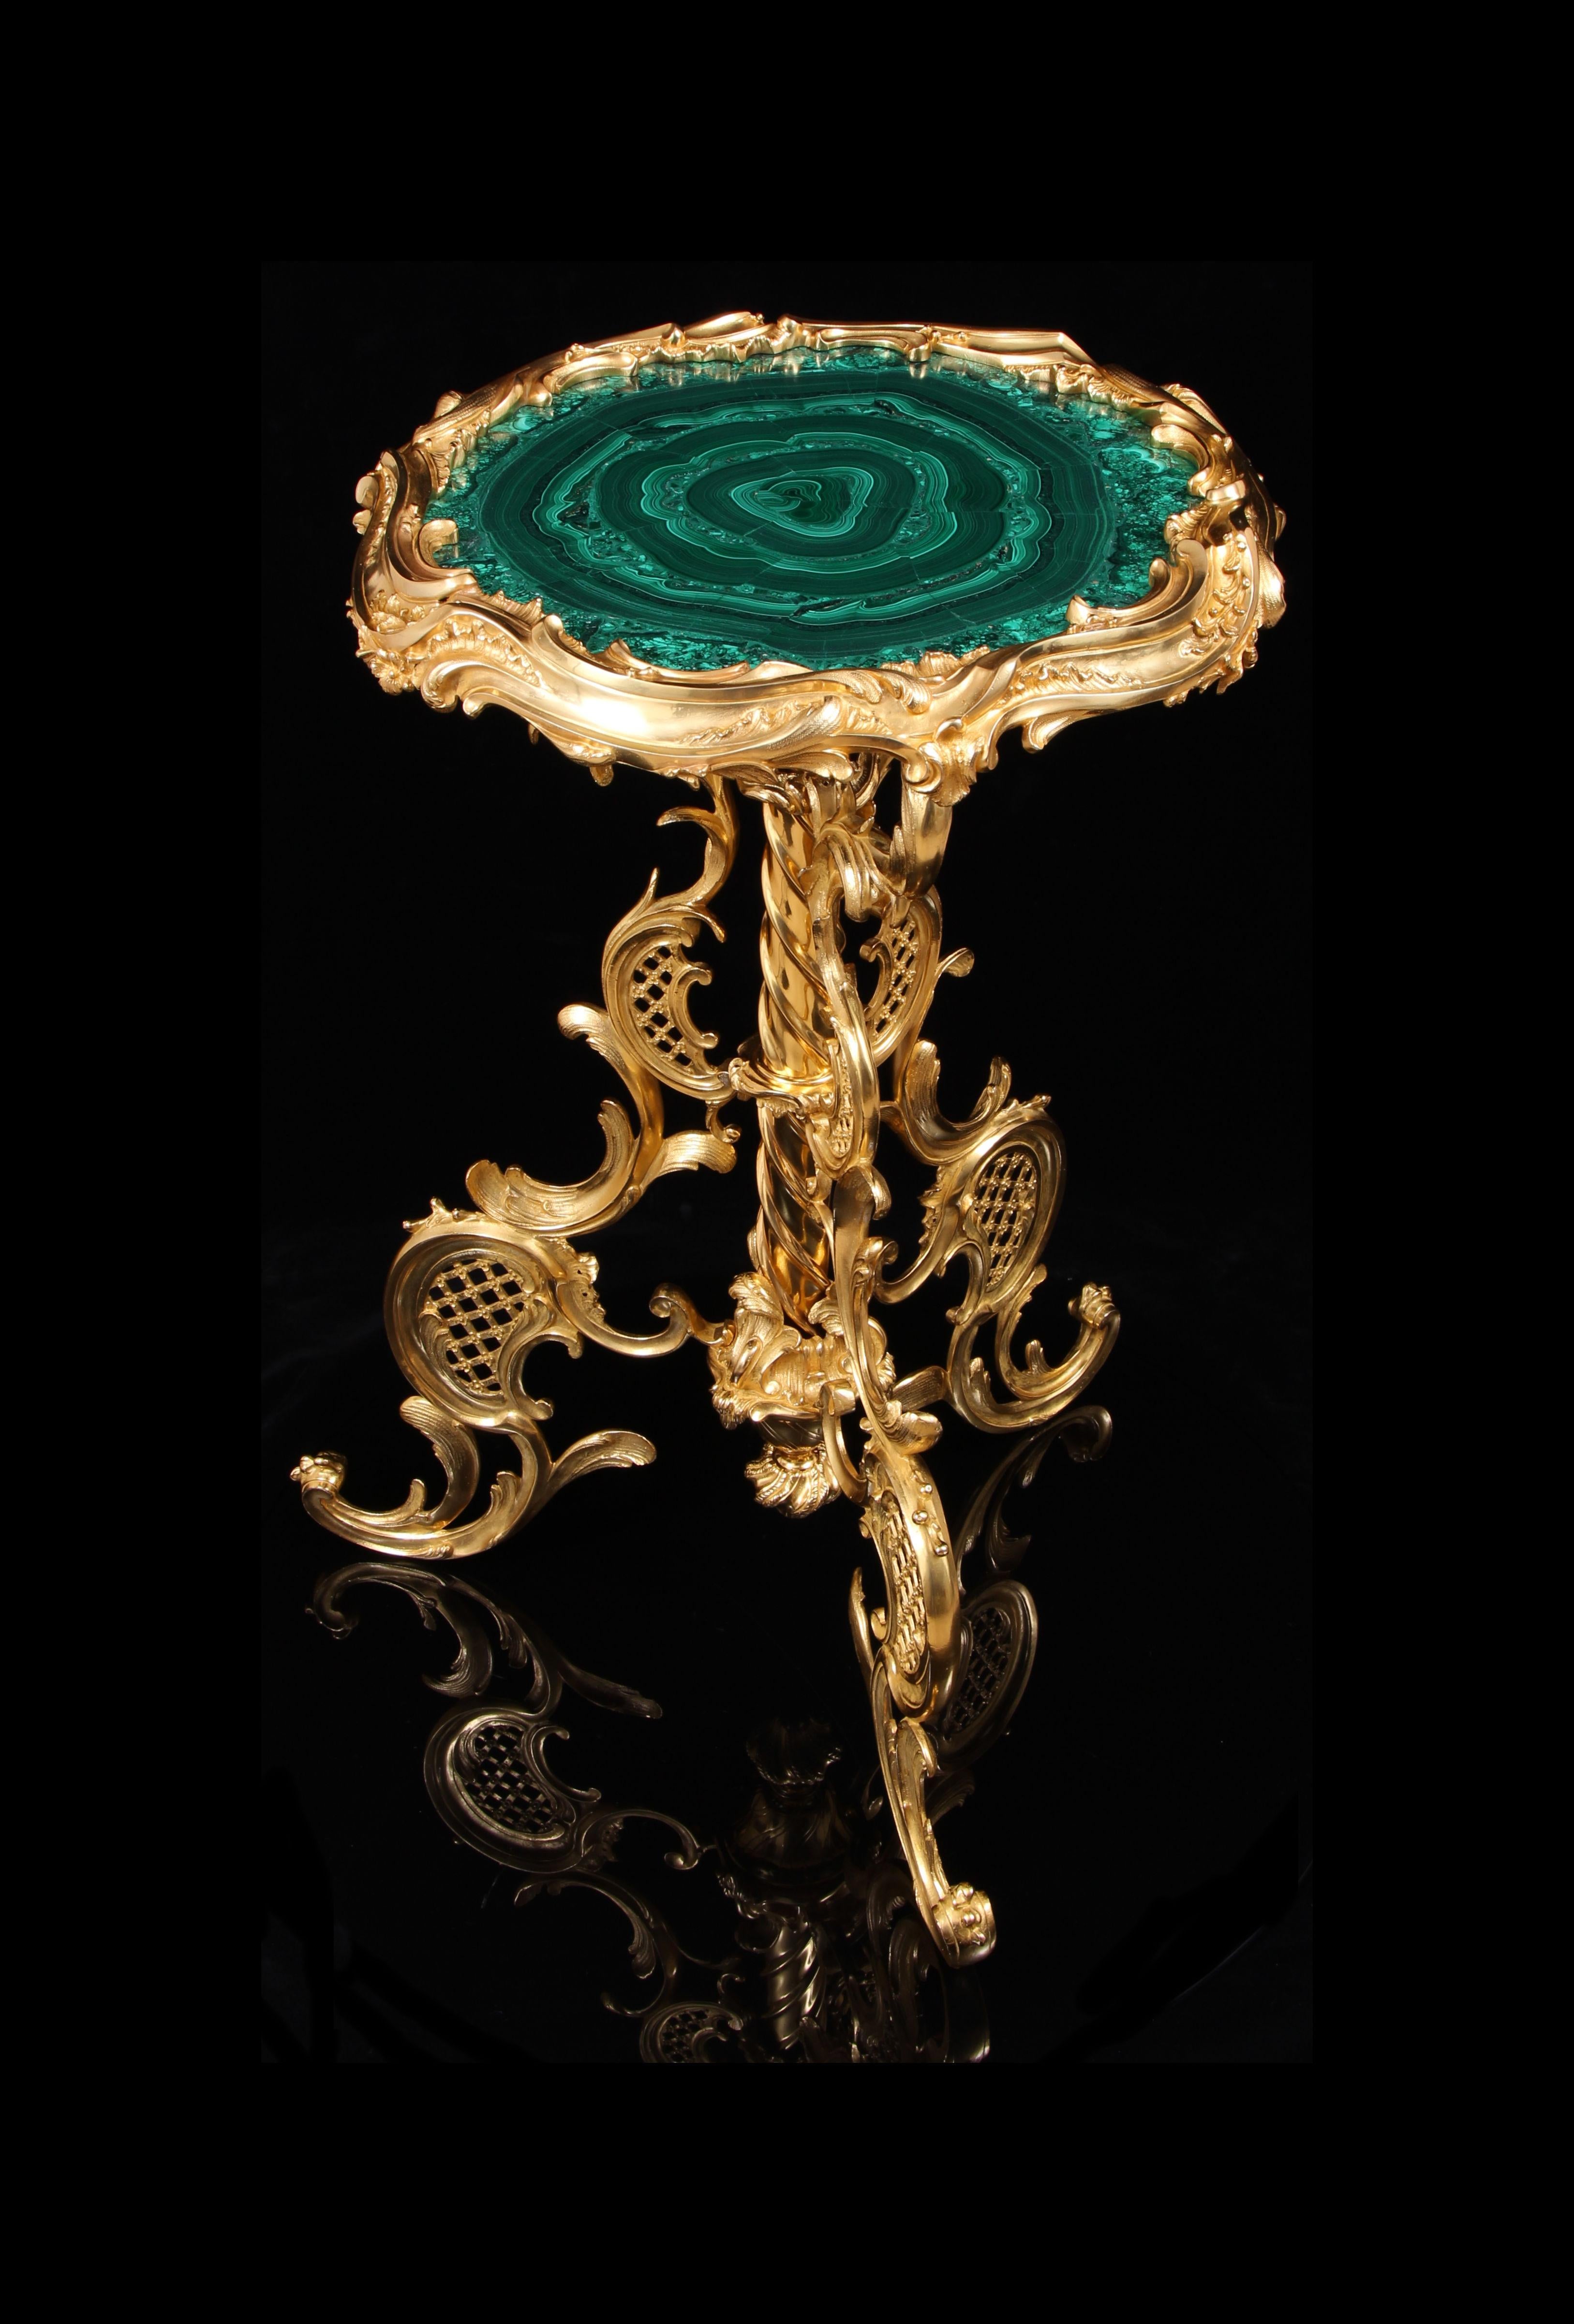 Important guéridon rococo en bronze doré et malachite du 19e siècle. Cette magnifique table est conçue et fabriquée dans la plus superbe forme sculpturale du rococo. Ce chef-d'œuvre en bronze massif finement coulé, poli et doré, intègre un fabuleux